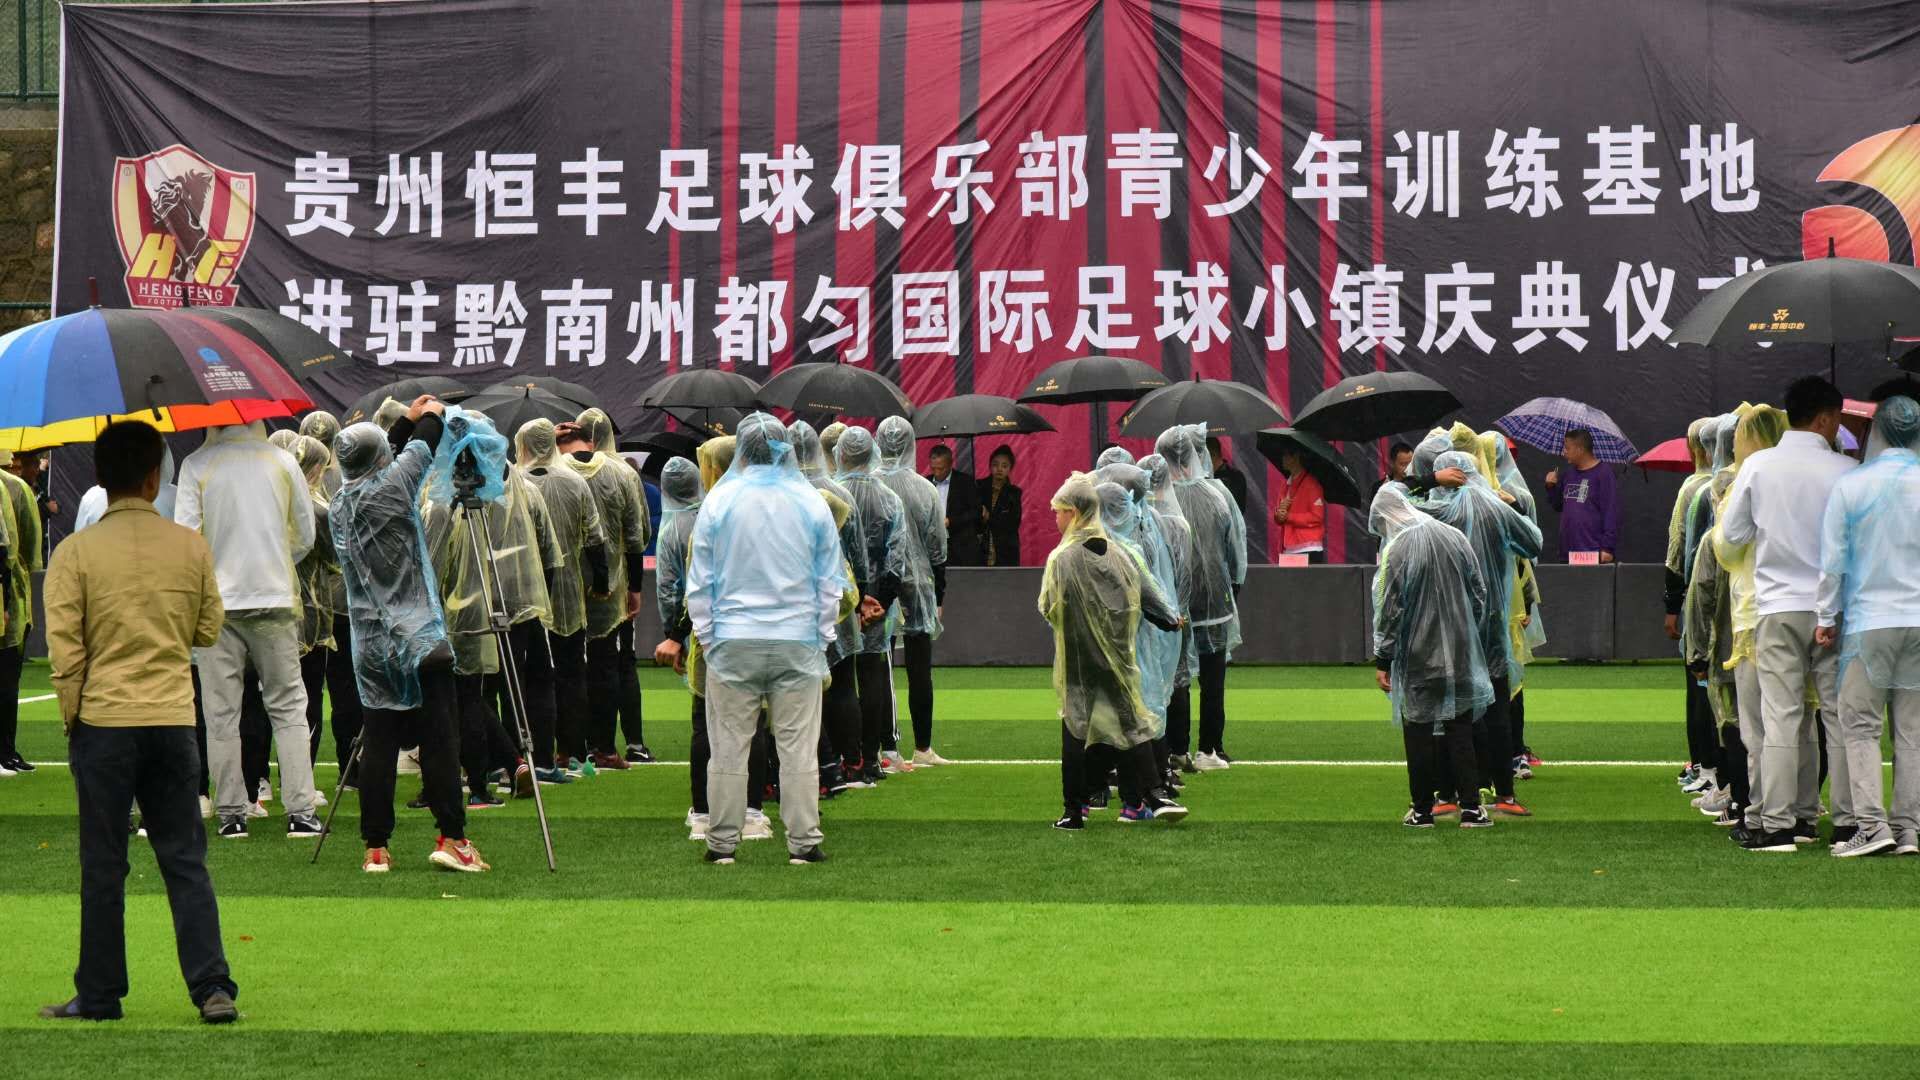 贵州恒丰足球俱乐部青训基地进驻都匀国际足球